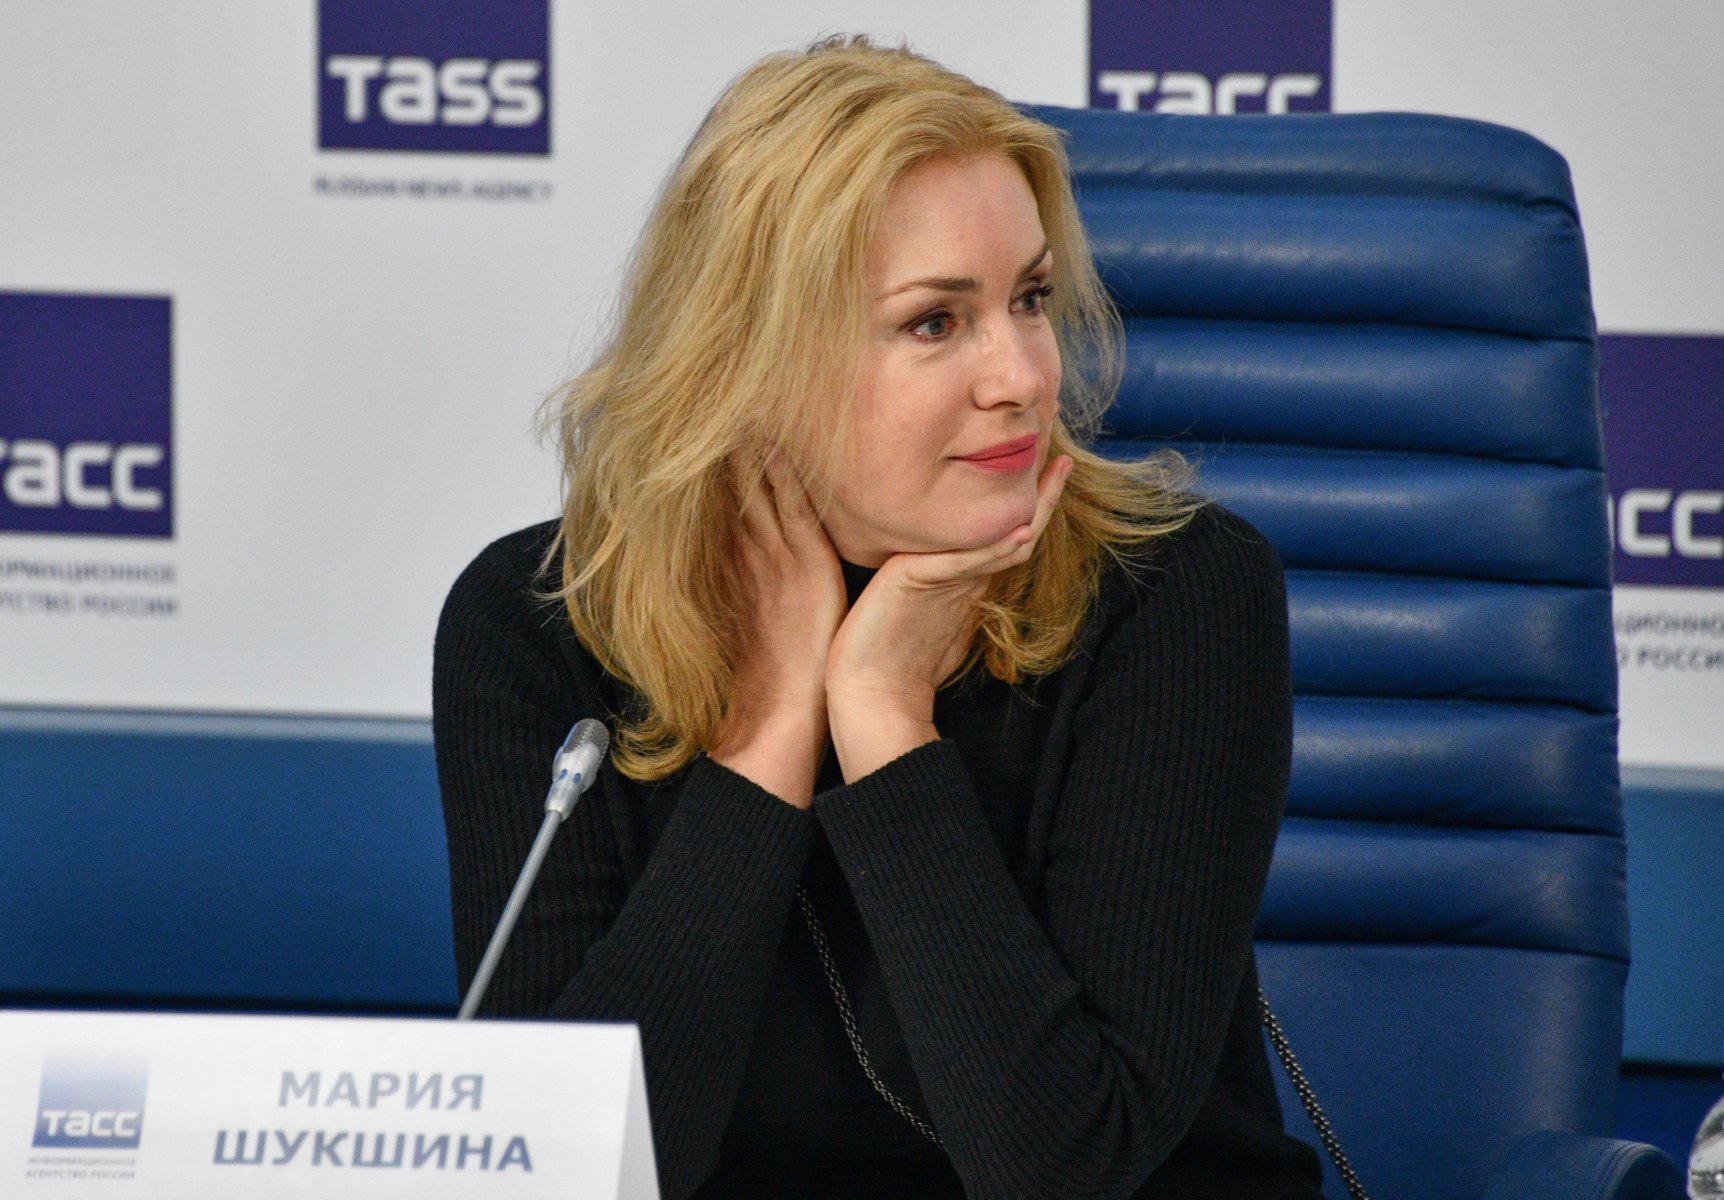 Мария Шукшина пытается разрушить прививочную кампанию против «омикрона»